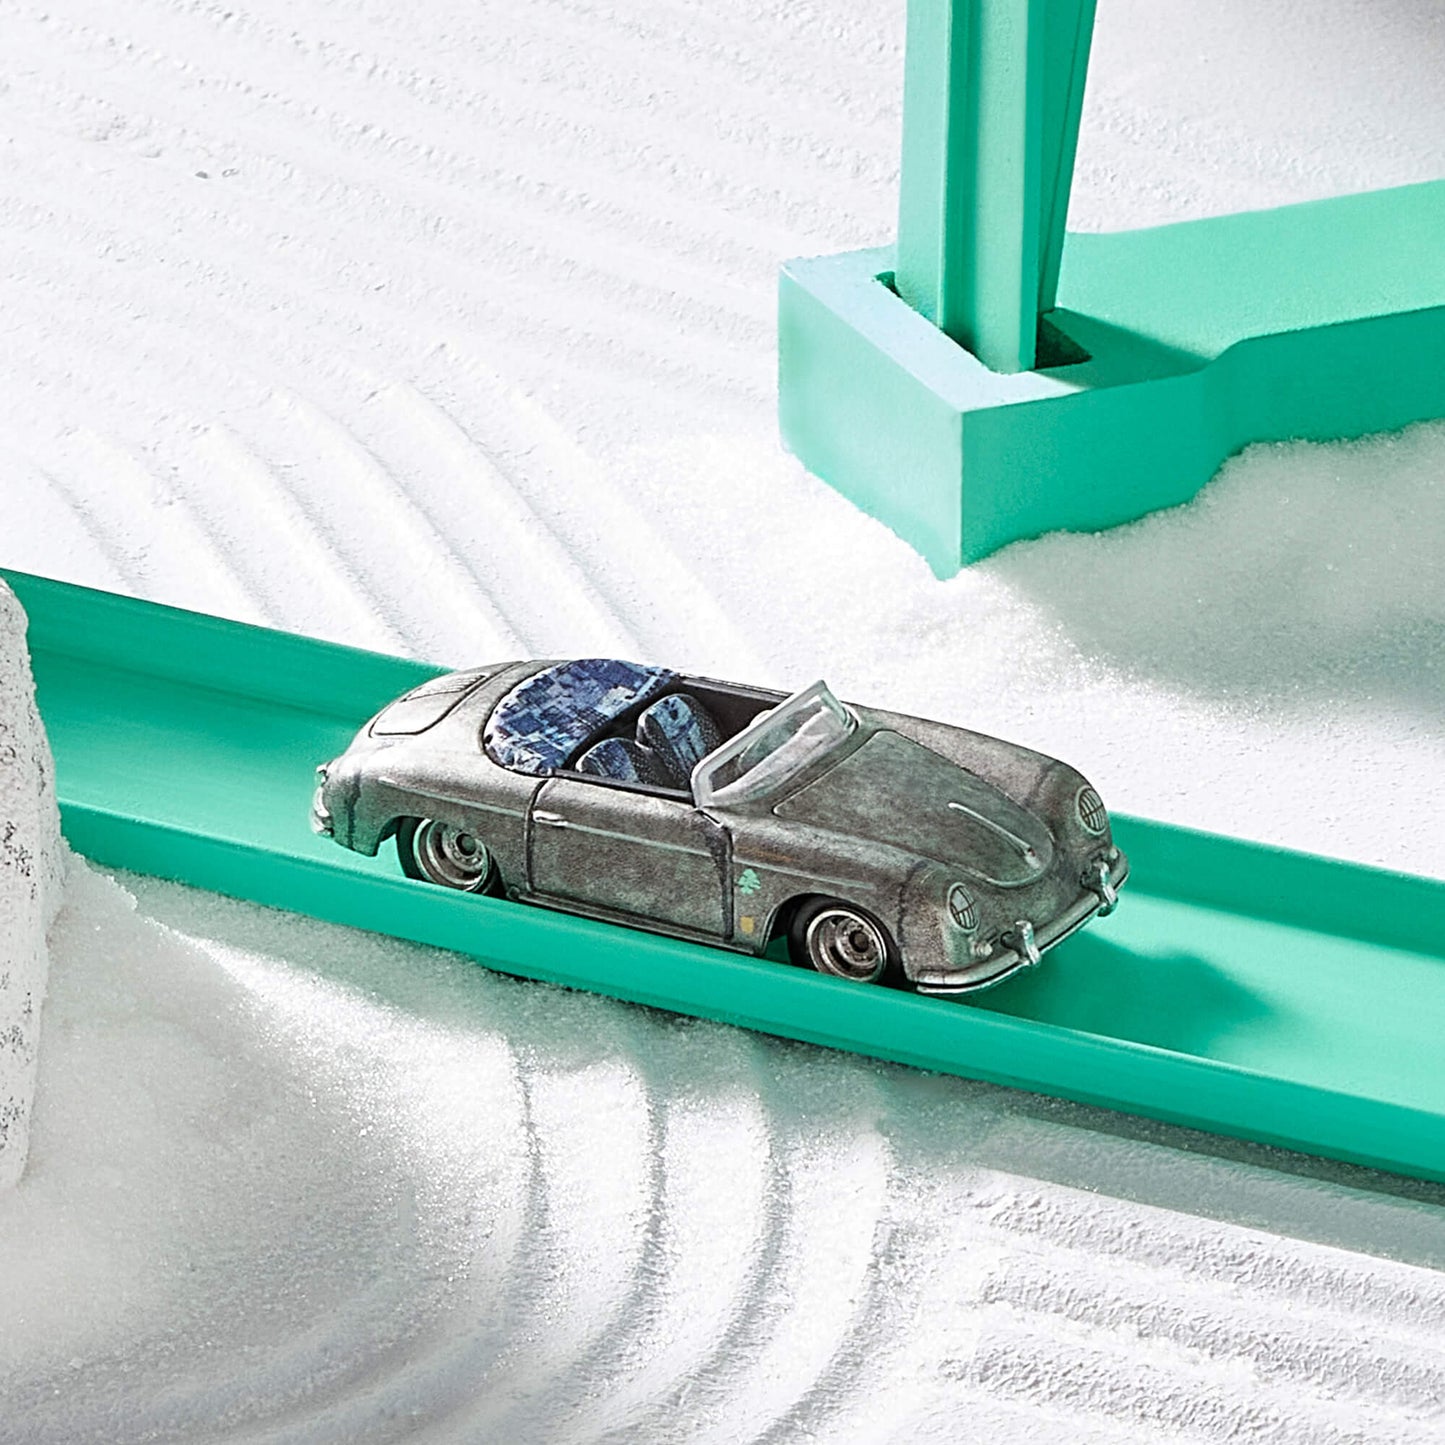 Hot Wheels x Daniel Arsham Porsche 356 “Bonsai” Speedster – Mattel Creations